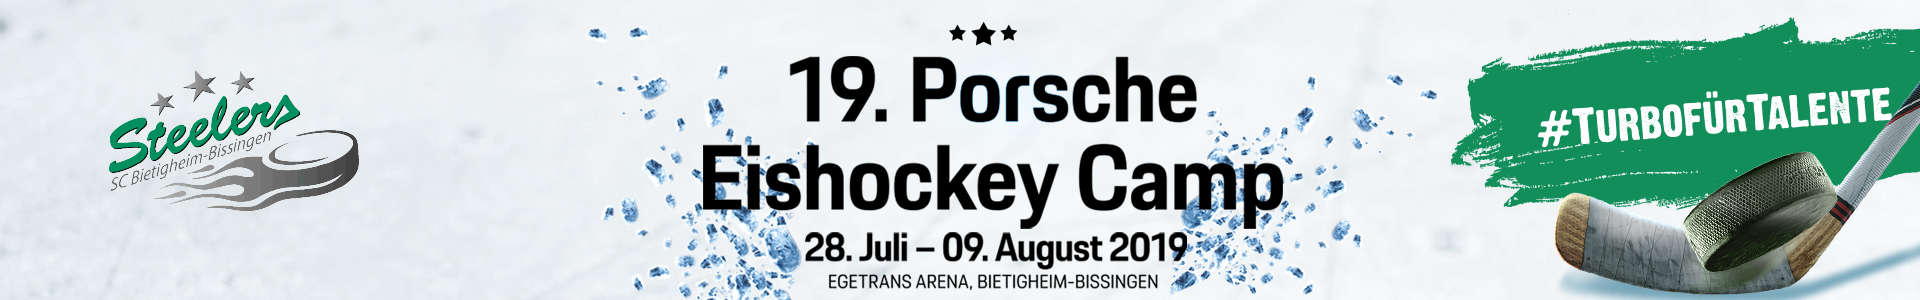 Am Wochenende startet das 19. Porsche Eishockey Camp des Steelers Nachwuchs Bild